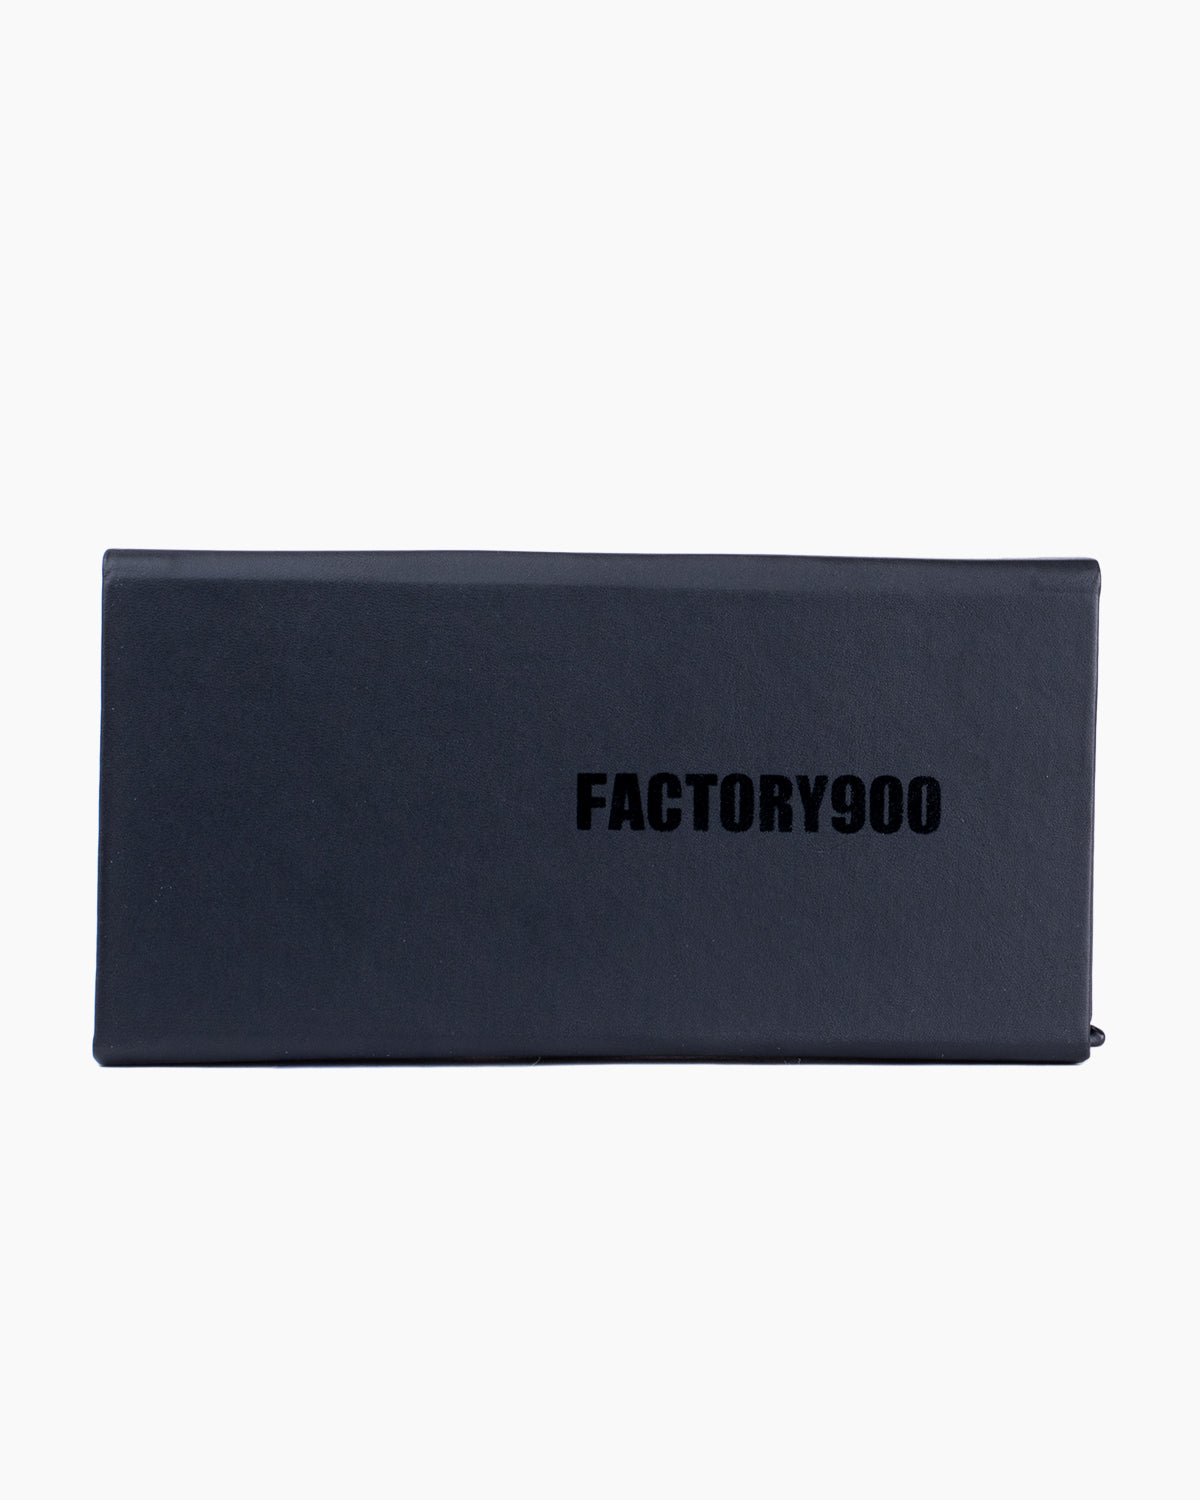 Factory 900 - MF001 - 02 | Bar à lunettes